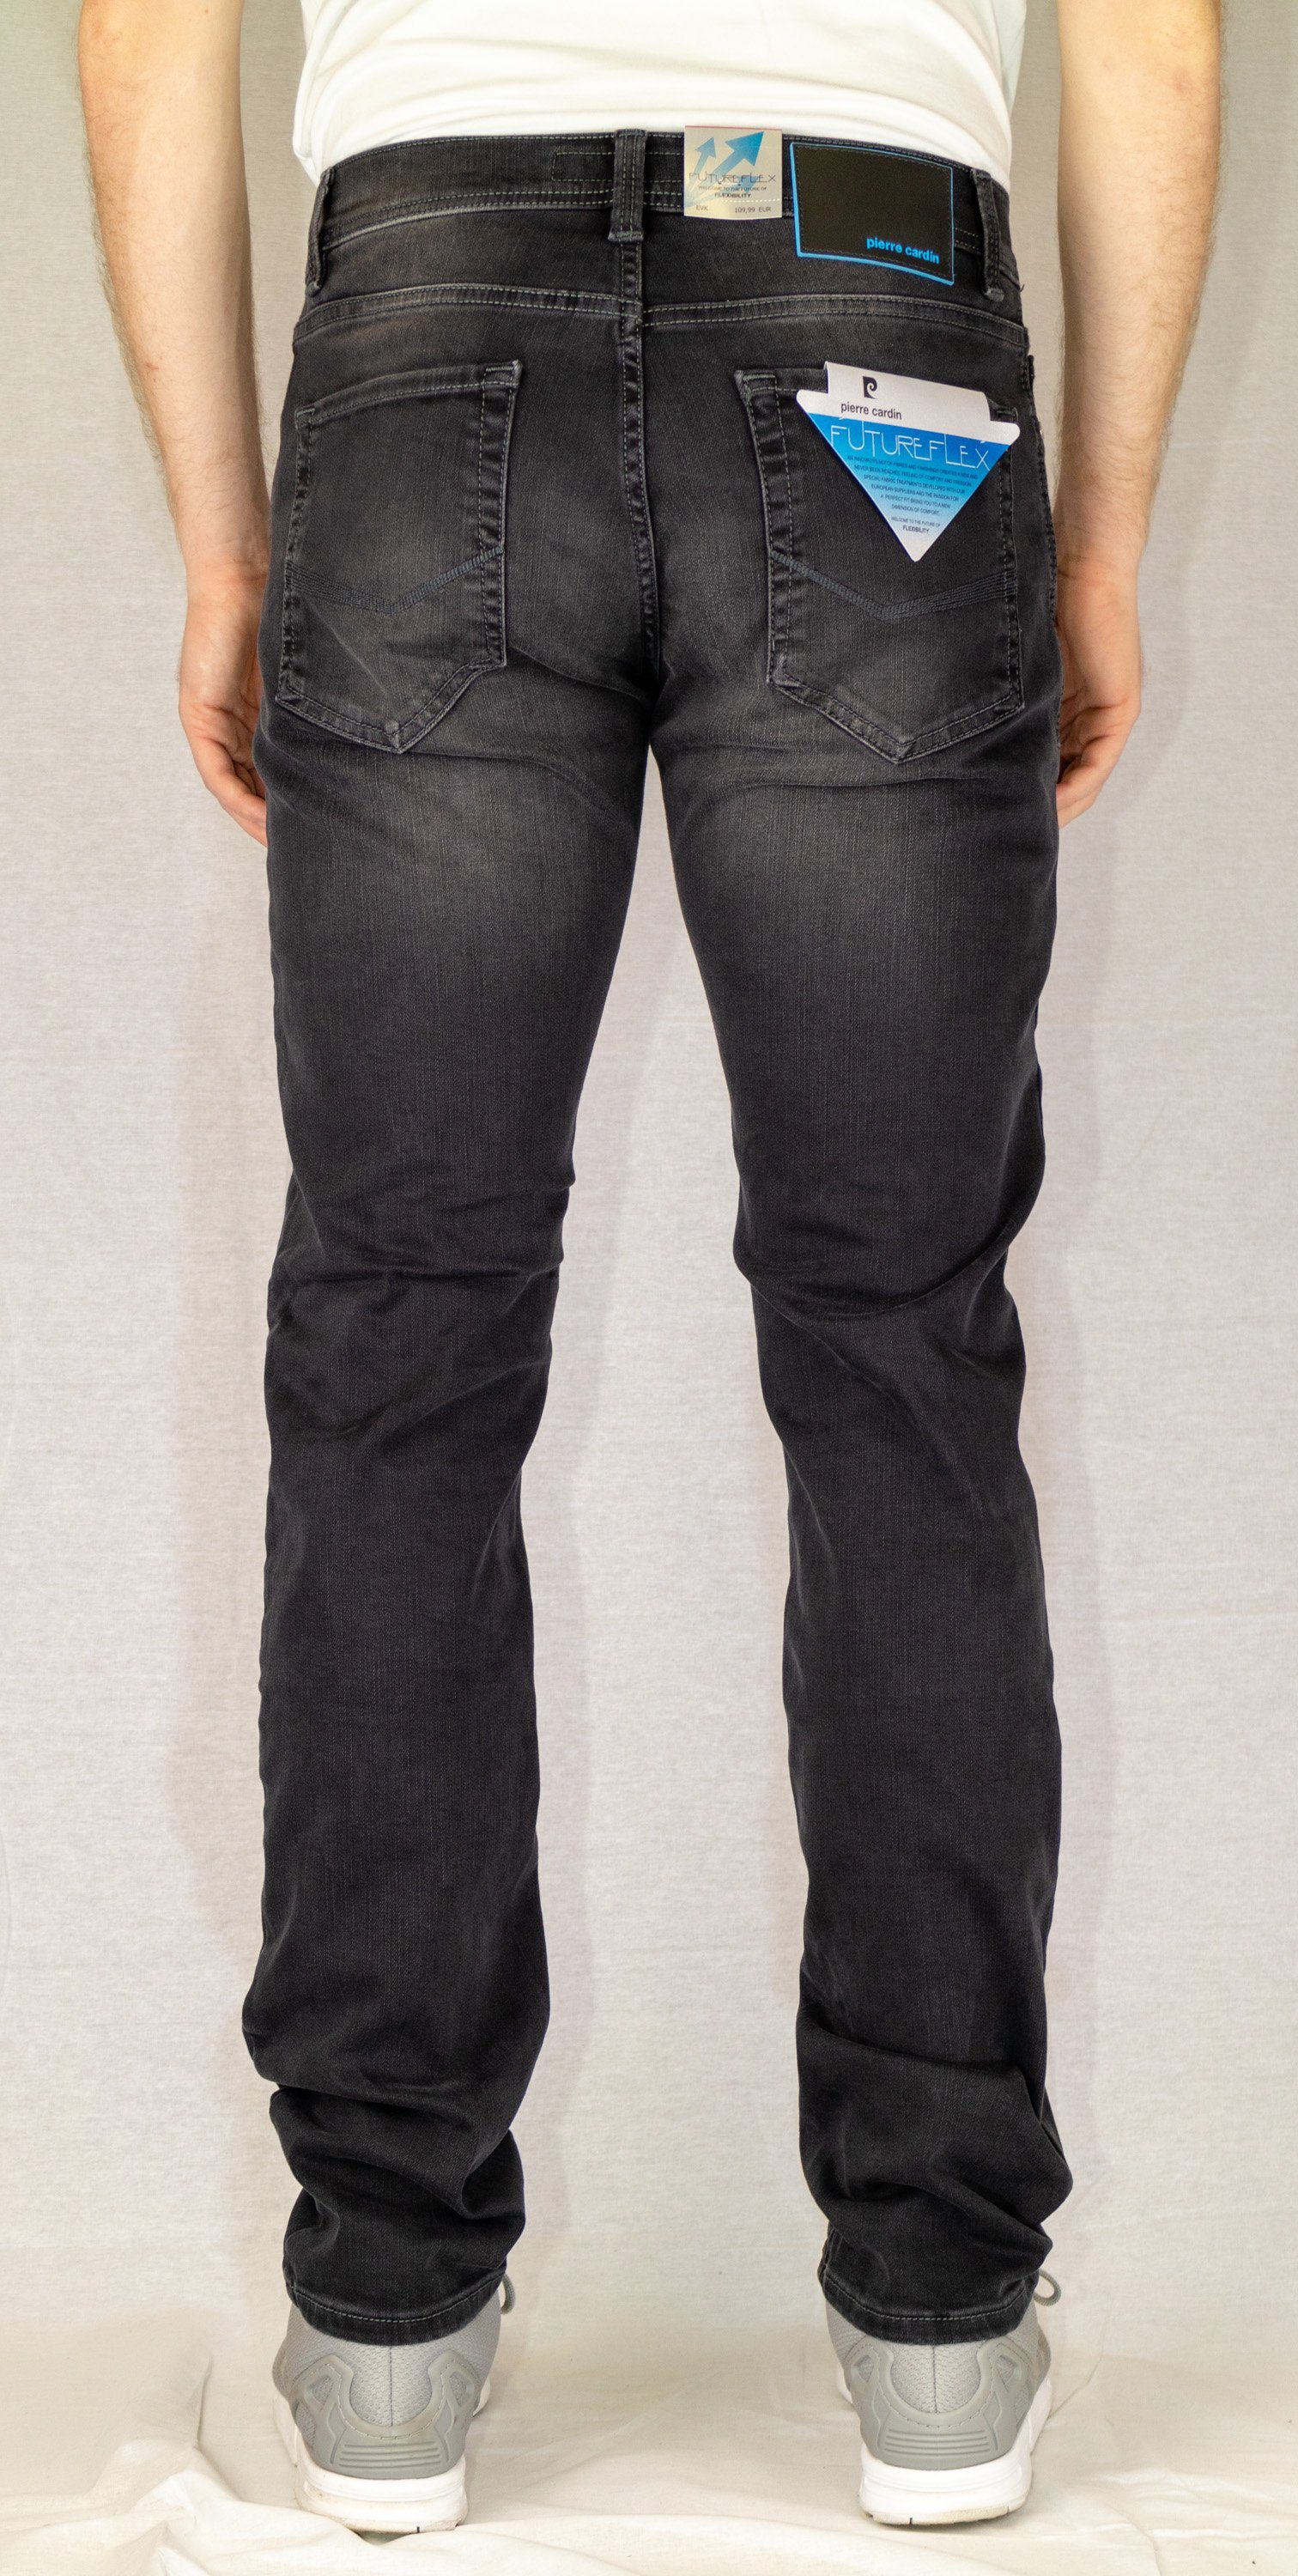 Pierre Cardin 5-Pocket-Jeans PIERRE CARDIN grey 8880.85 FUTUREFLEX LYON 3451 used